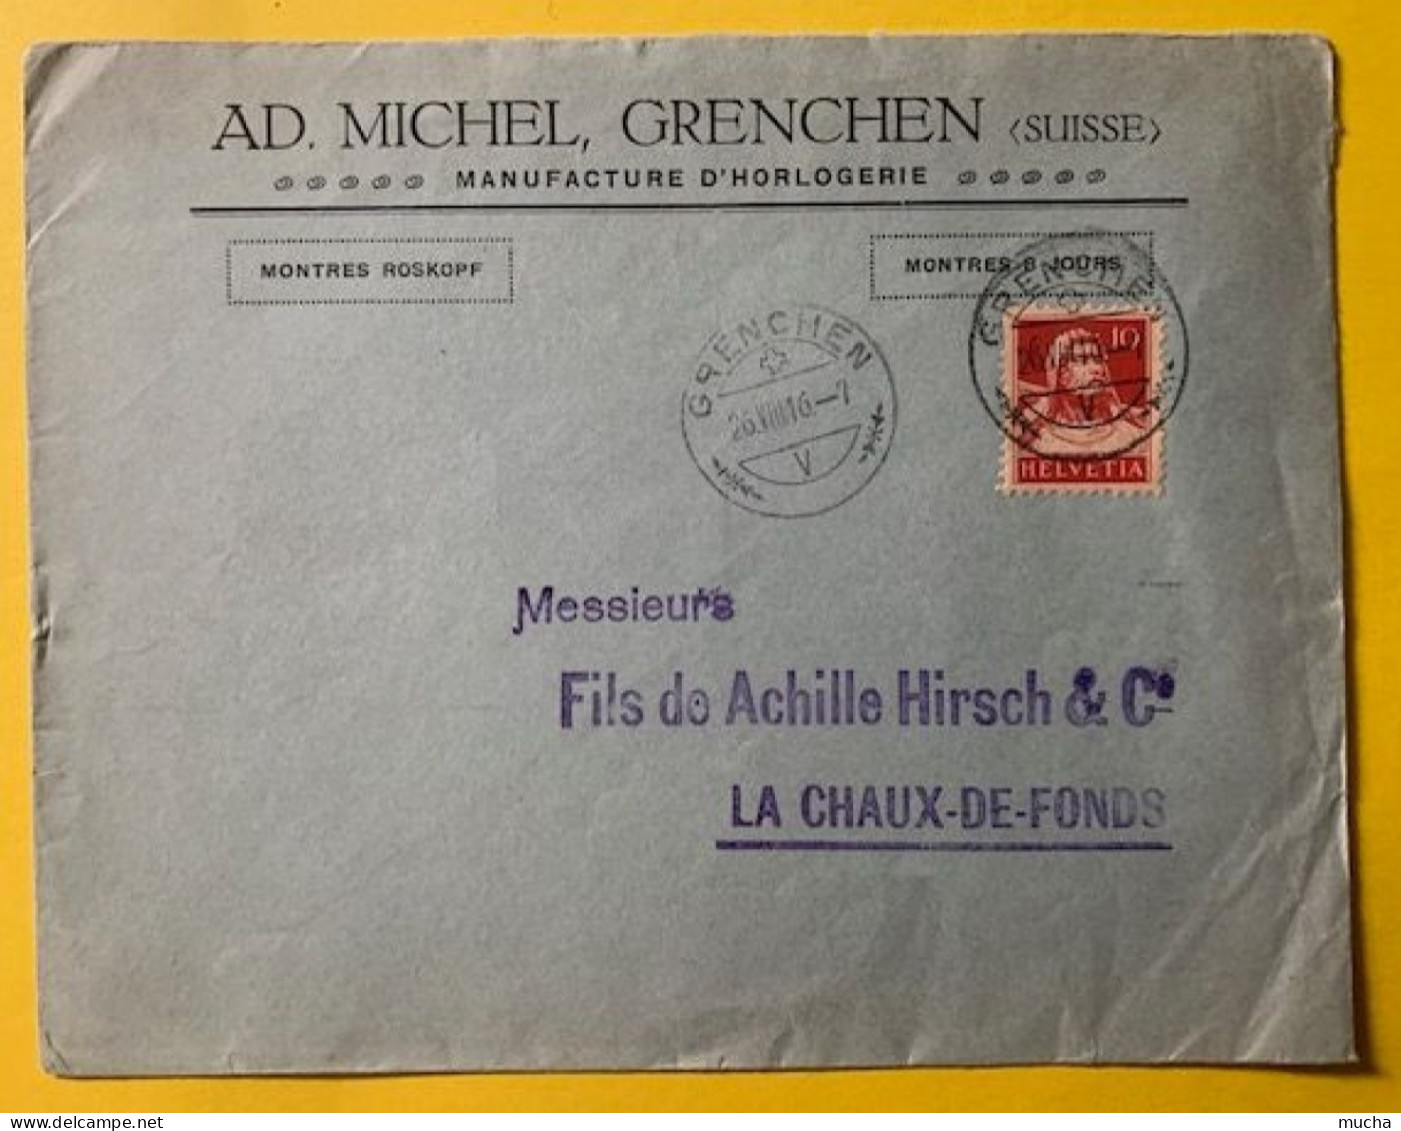 70019 - Suisse Lettre Ad. Michel Manufacture D'Horlogerie Grenchen 26.08.1916 - Uhrmacherei